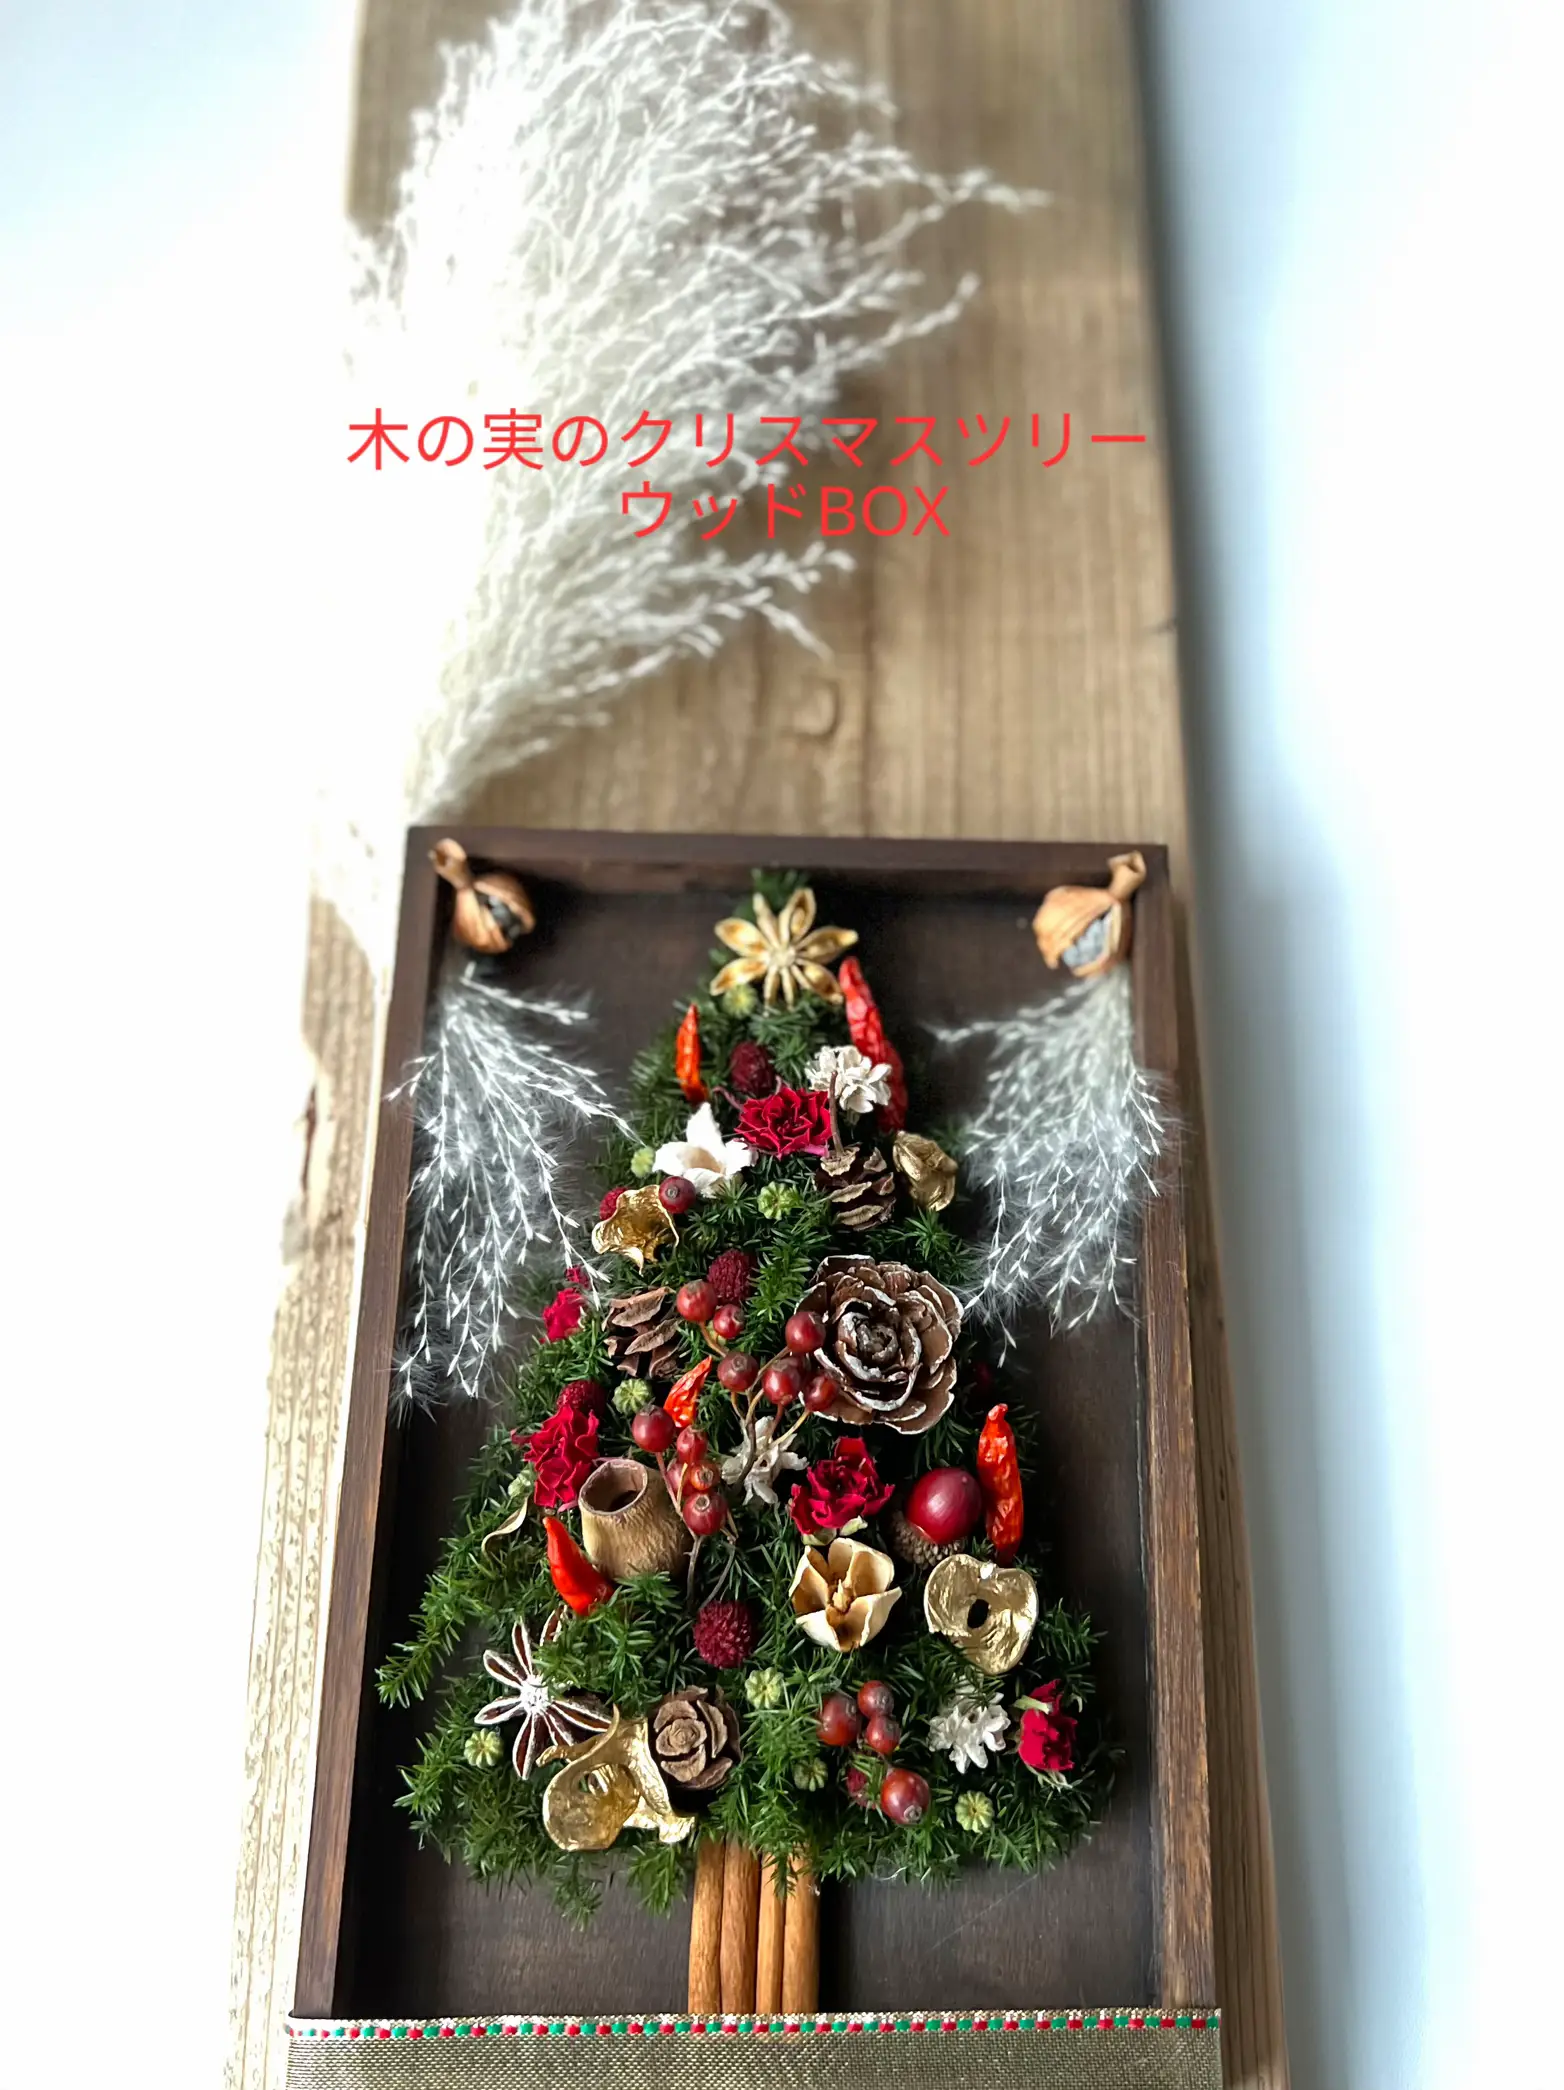 木の実のクリスマスツリー ウッドBOX | fortuna_m.hが投稿したフォト ...